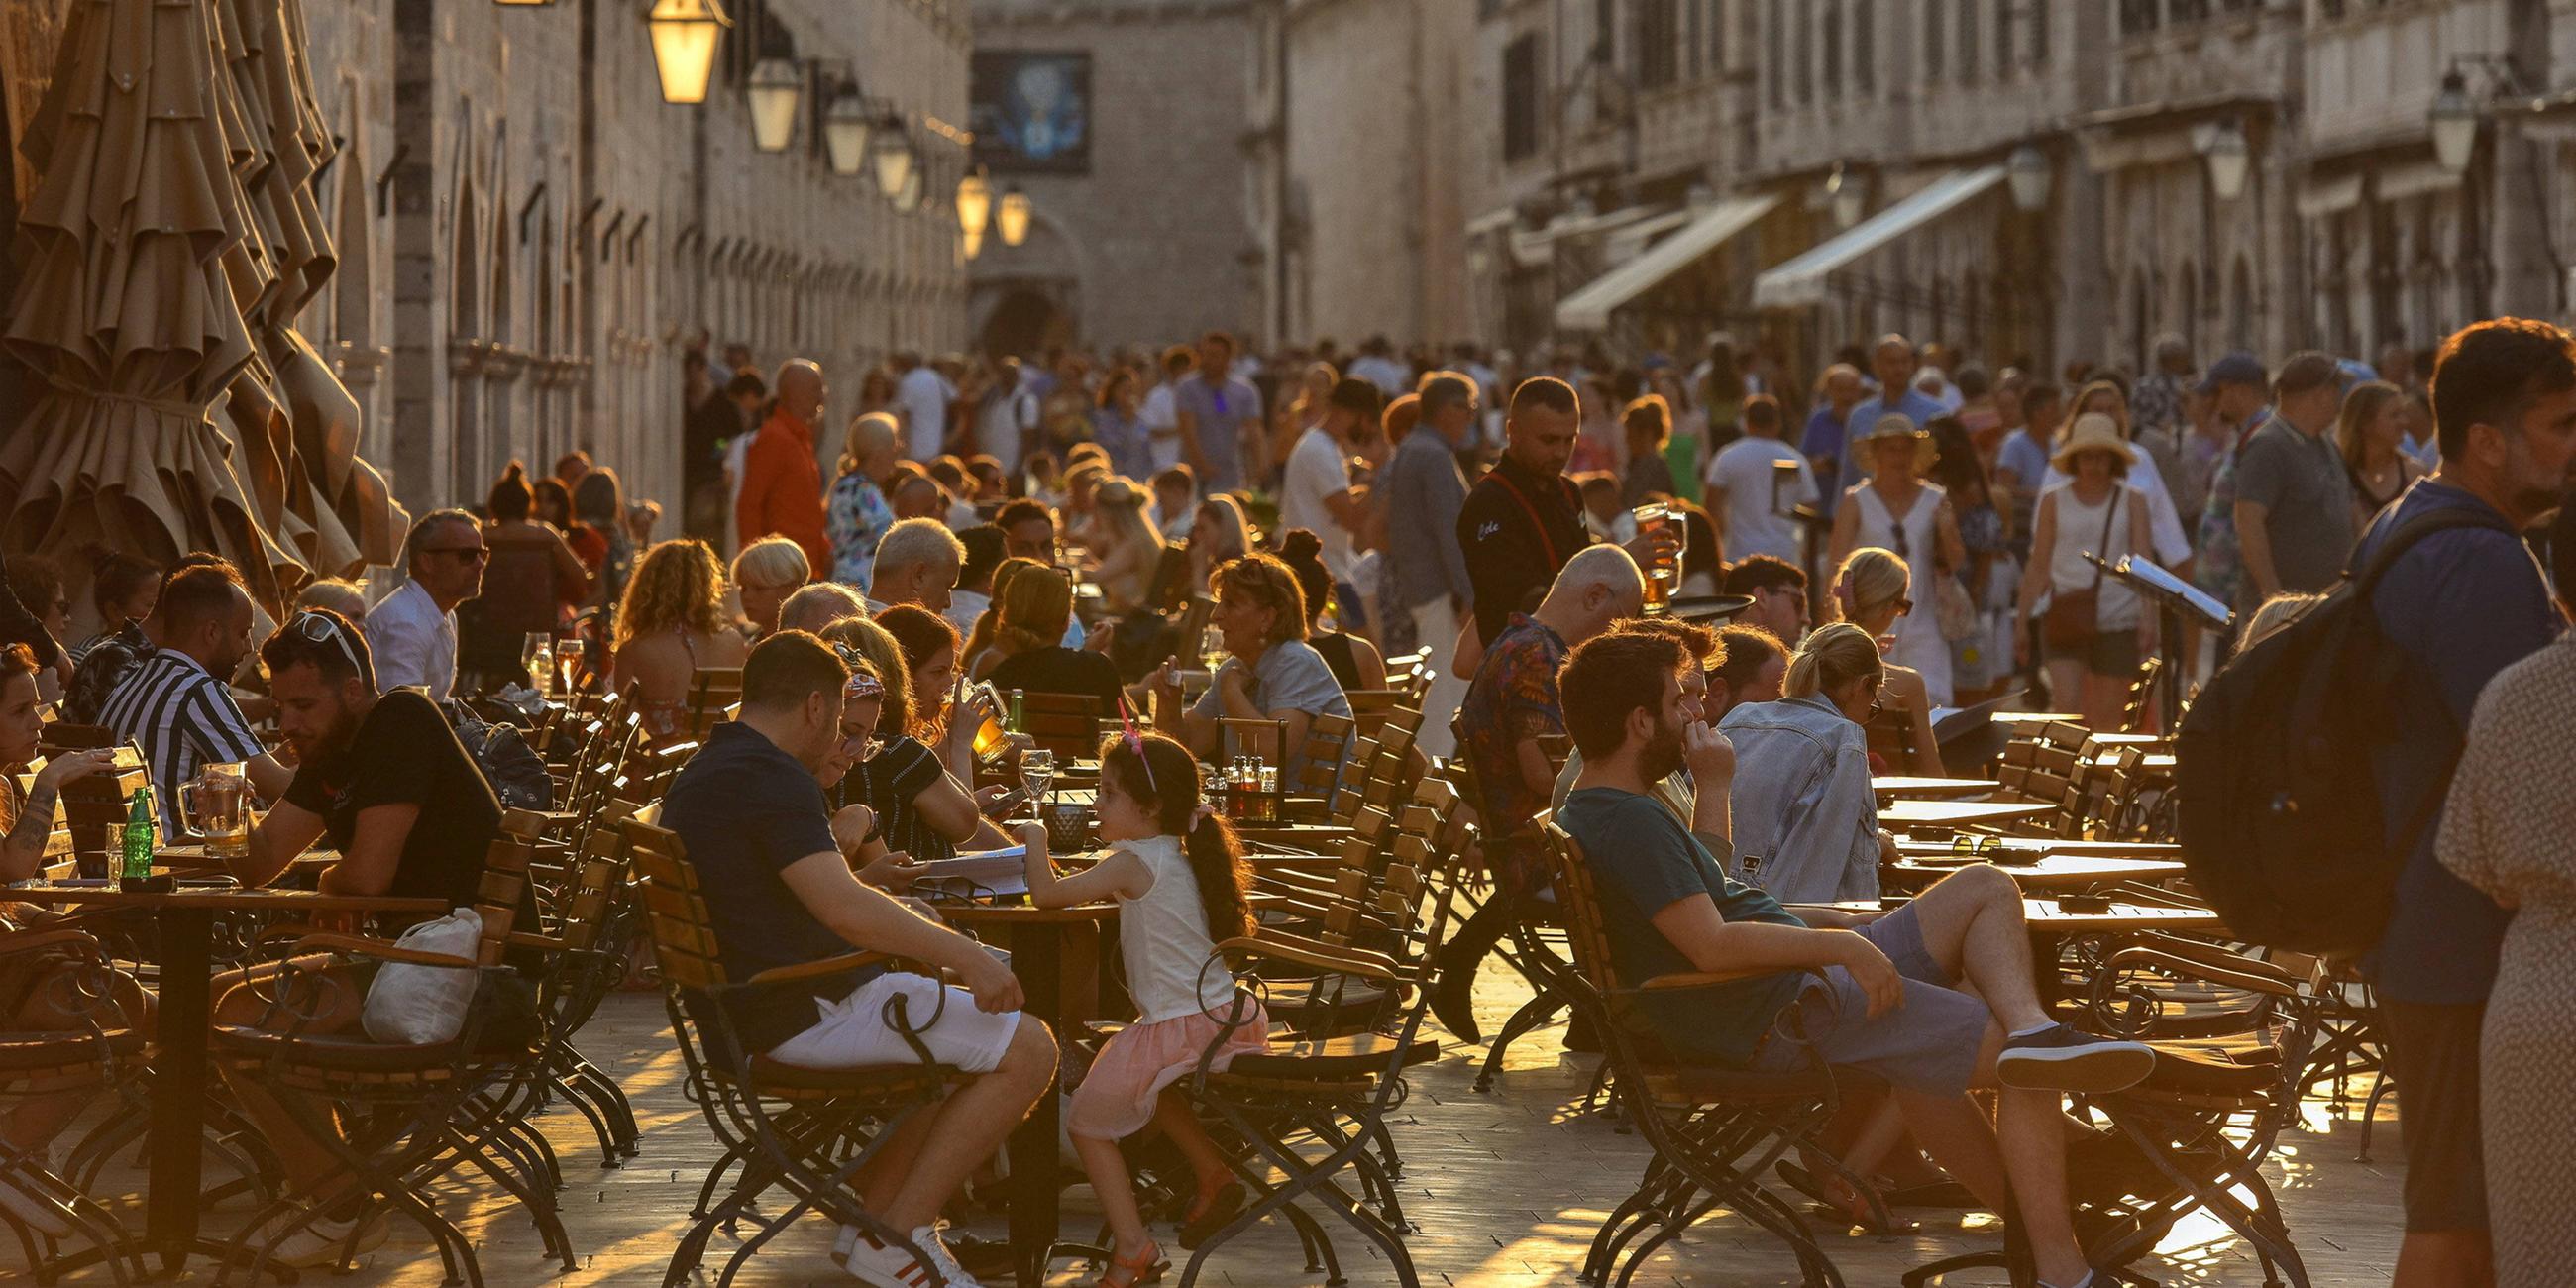 Die Einwohner von Dubrovnik und ihre Gäste nutzten die angenehmere Lufttemperatur am Abend für einen Spaziergang entlang des Stradun.